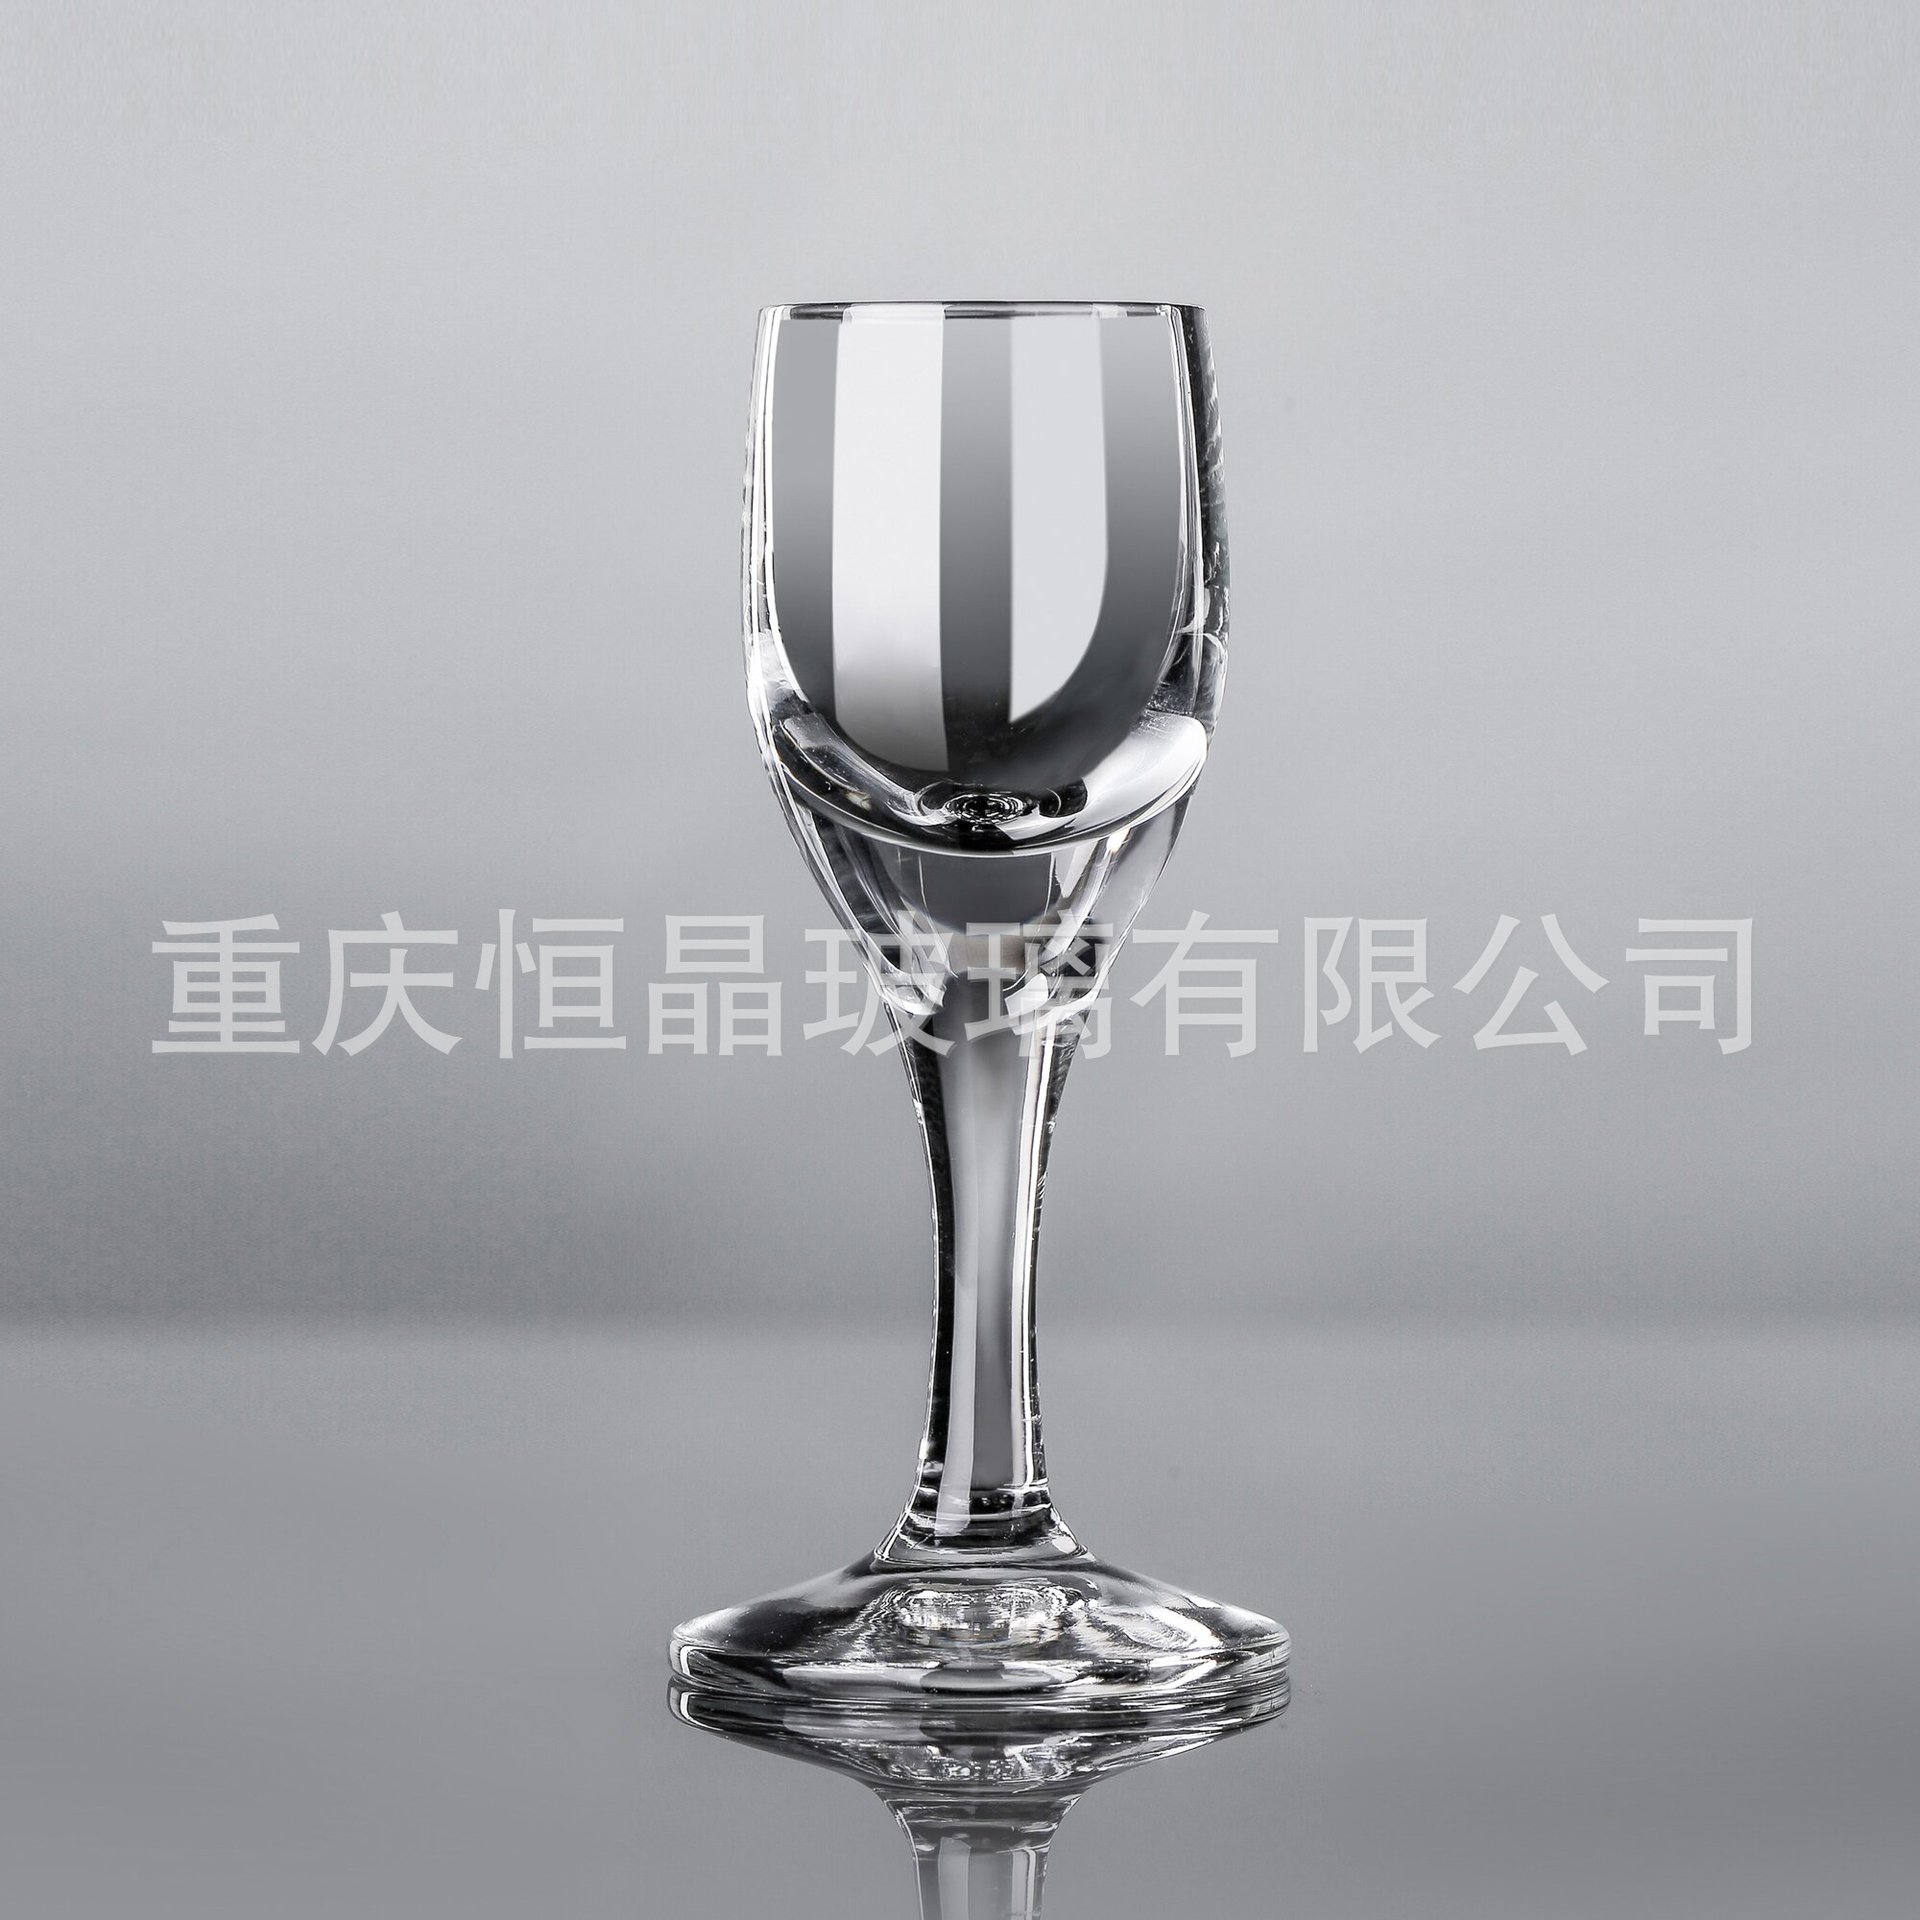 18ML玻璃酒杯/白酒杯/小酒杯/品酒杯HJ-B1818